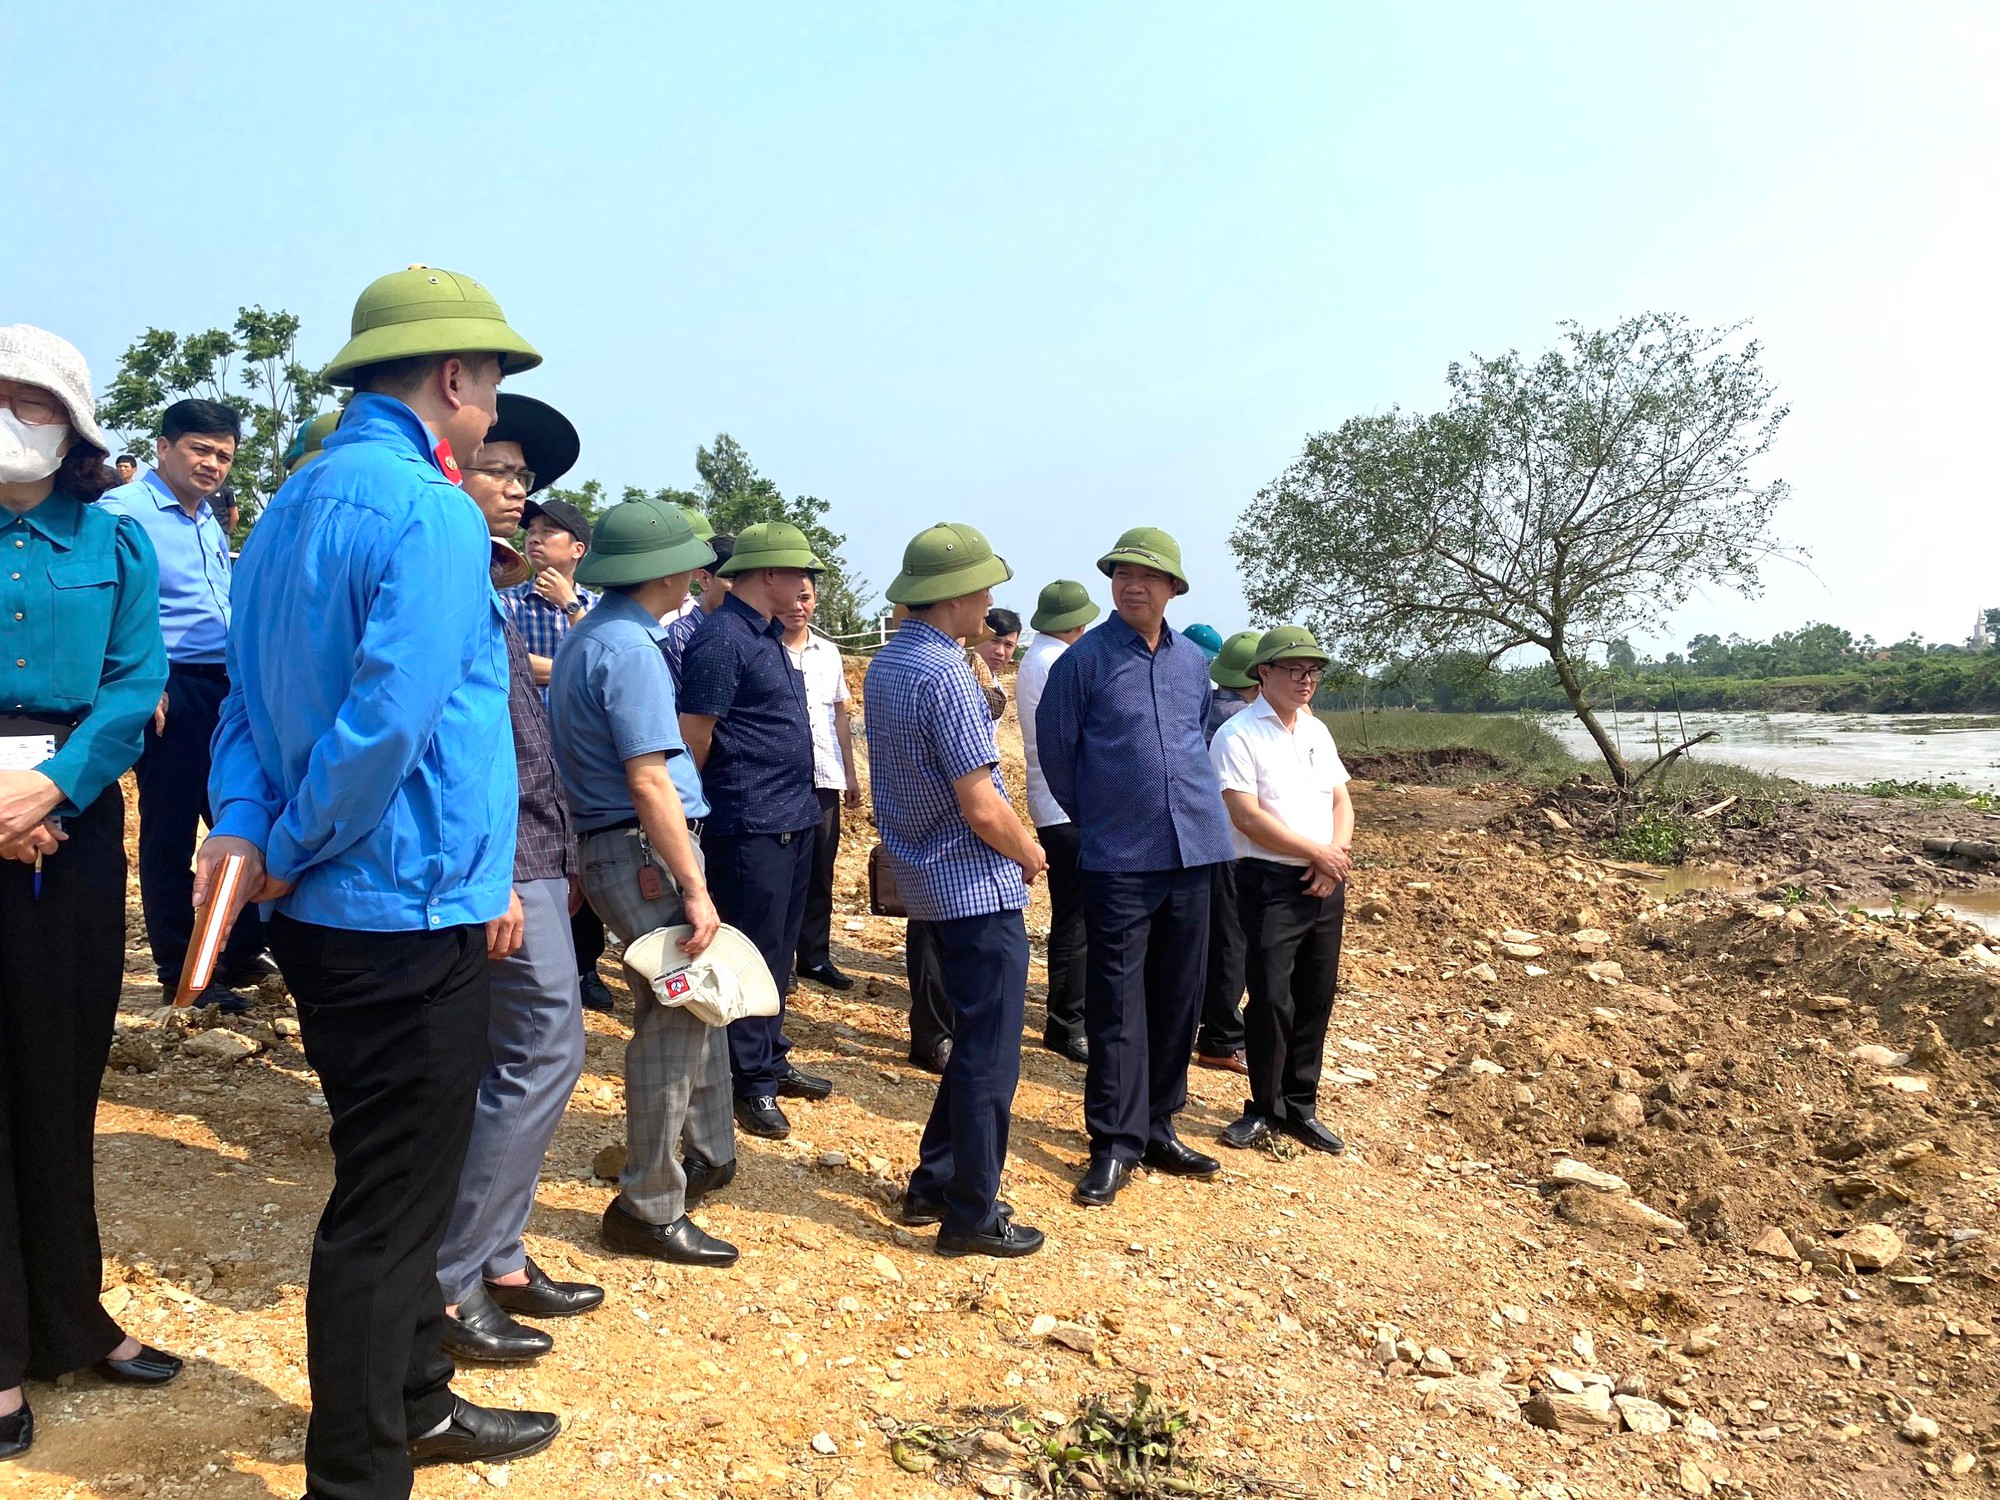 Doanh nghiệp đang thi công dự án, đê tả sông Càn: PCT tỉnh Thanh Hoá chỉ đạo khắc phục sự cố, hỗ trợ dân - Ảnh 1.